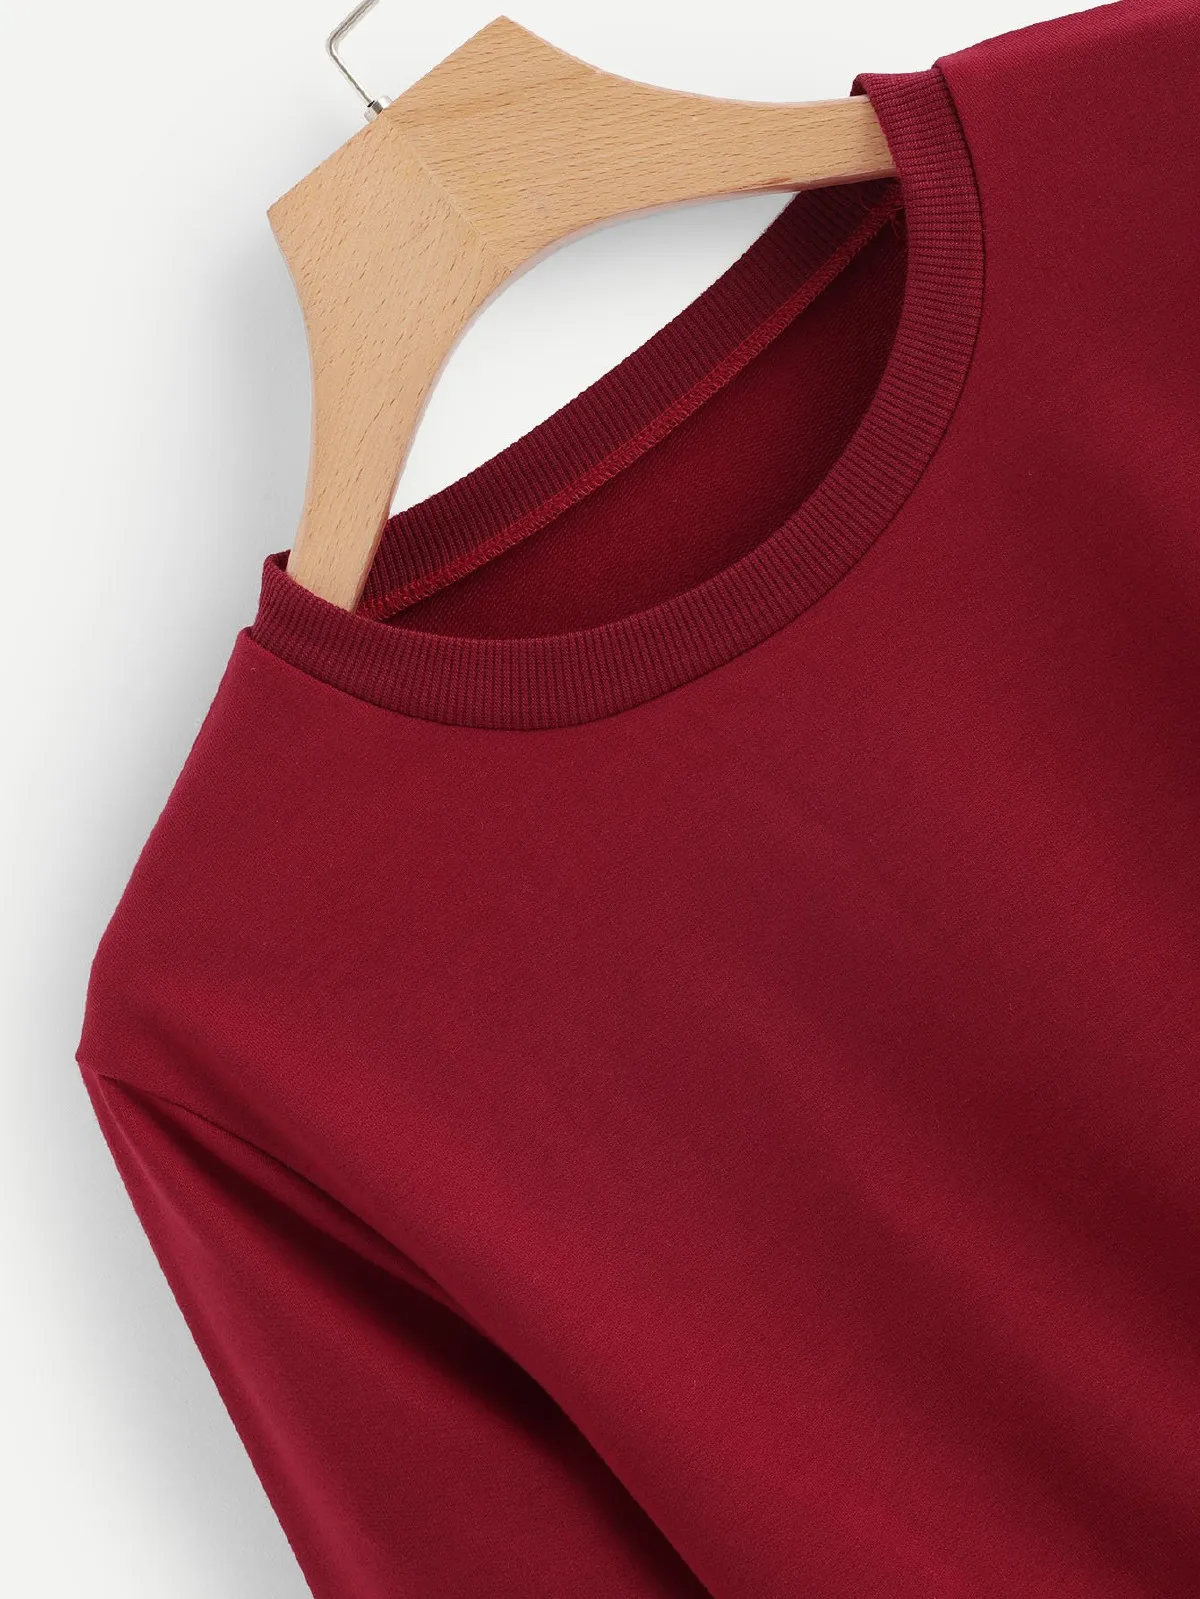 ATEEZ kpop укороченная толстовка с круглым вырезом модные короткие толстовки сексуальный пуловер в стиле хип-хоп с принтом оверсайз ATEEZ сексуальная одежда для женщин